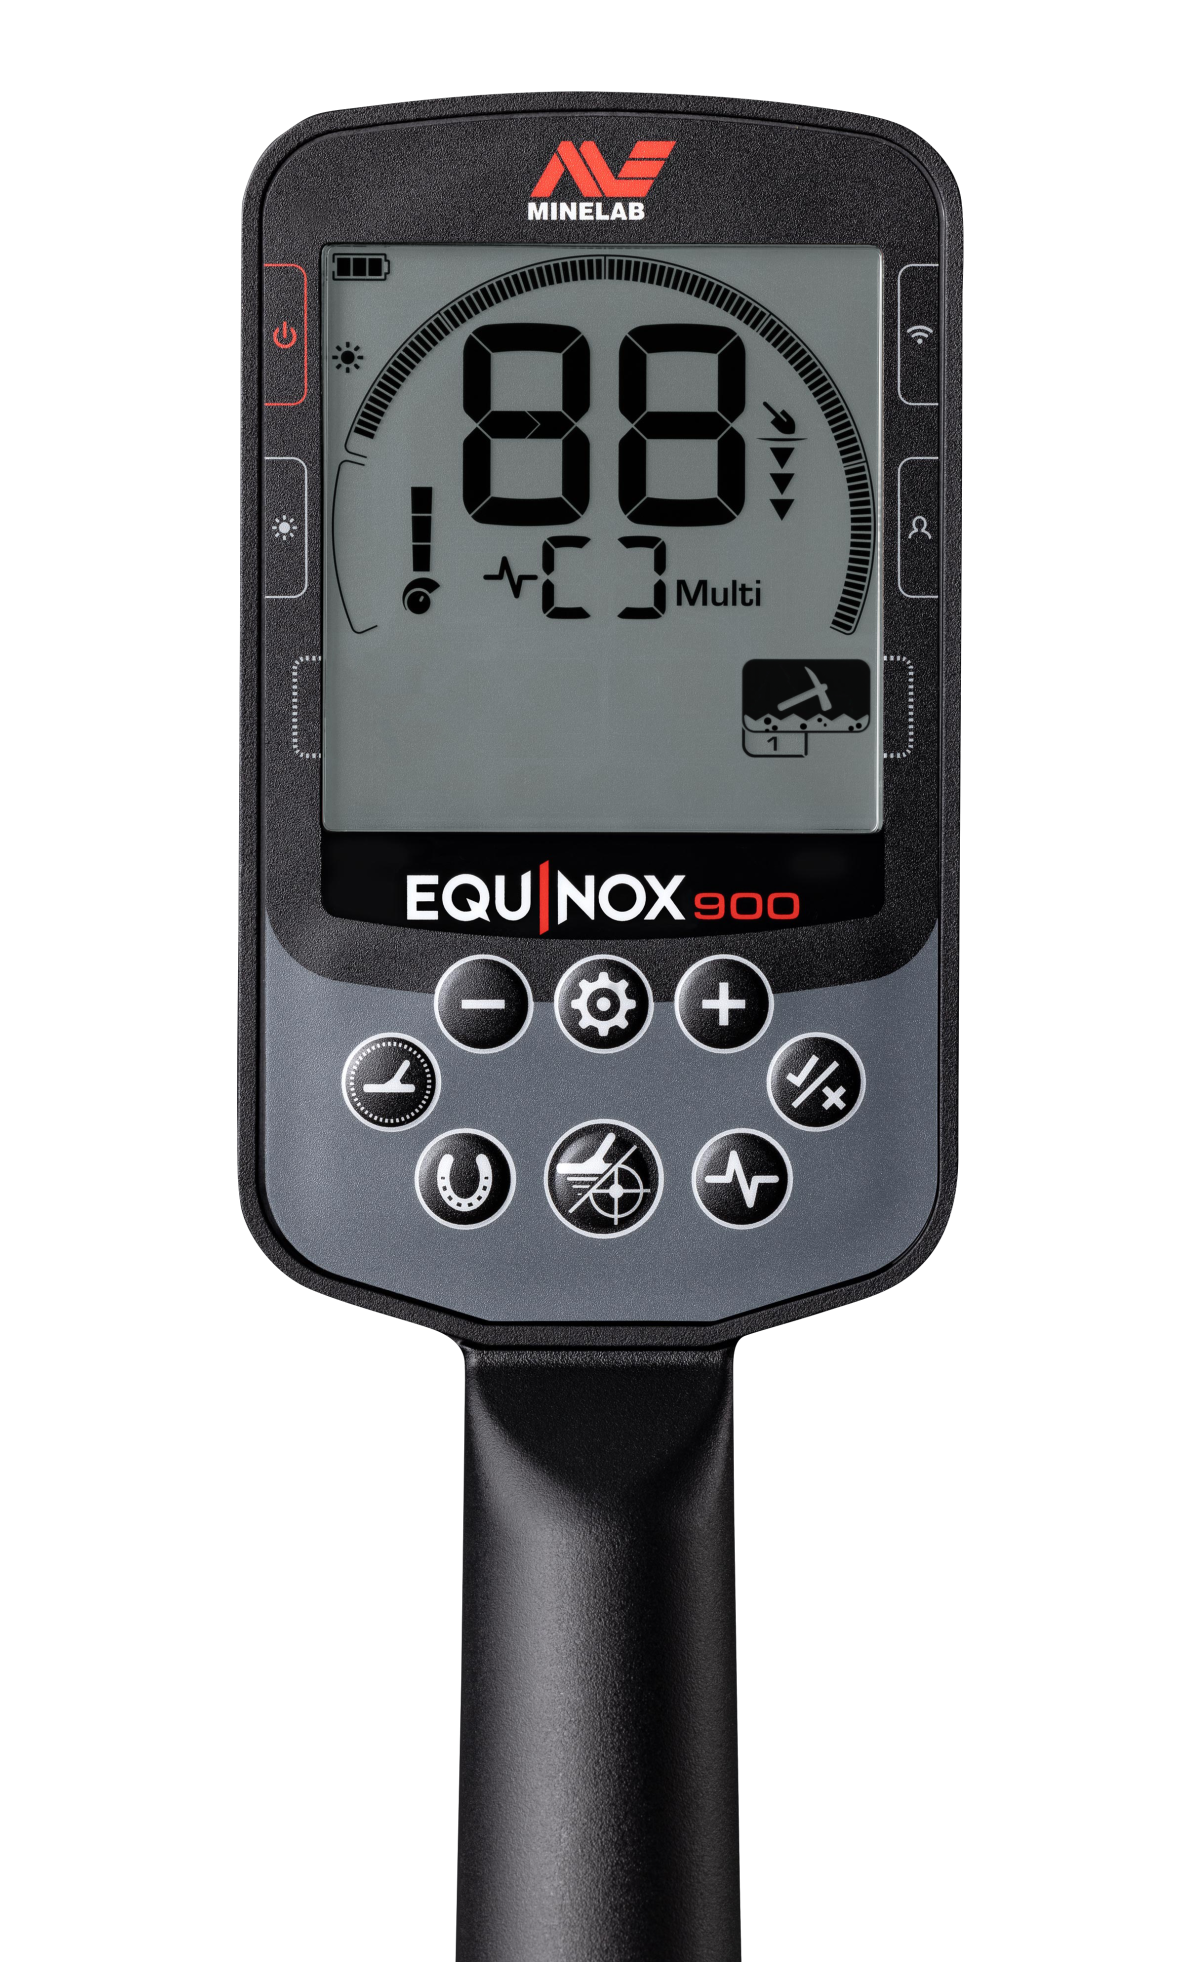 Minelab Equinox 900 (op voorraad) actie met gratis pro-find 40 pinpointer, 6 inch zoekschijf, en inclusief draadloze hoofdtelefoon.